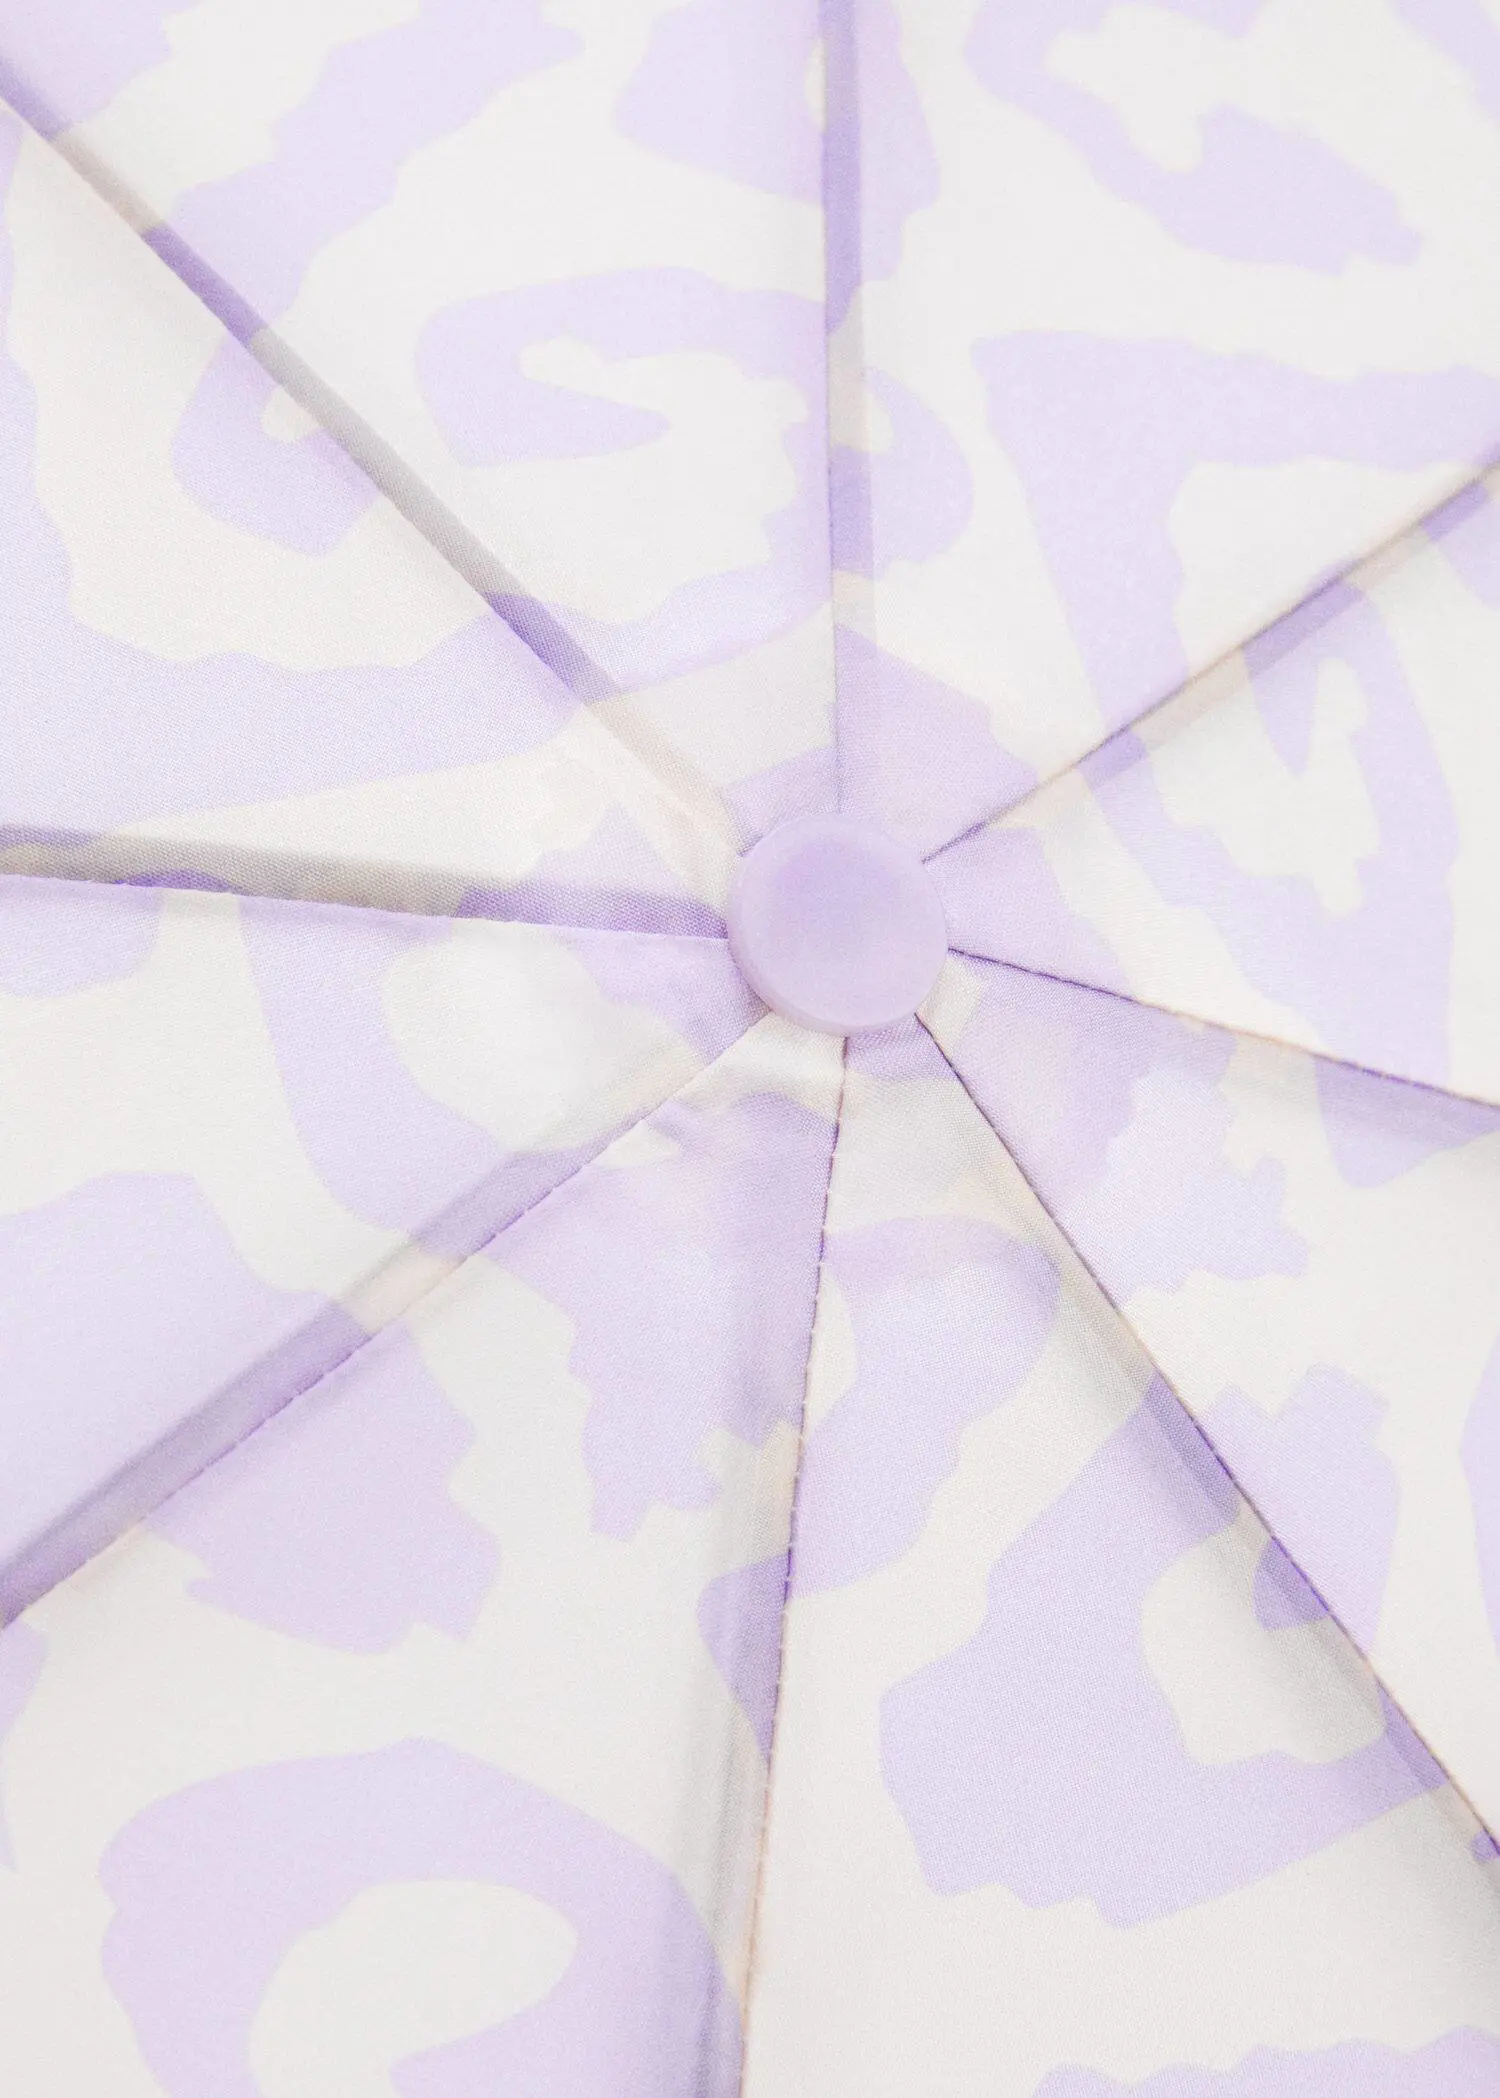 Mango Print folding umbrella. a close-up view of a purple umbrella. 